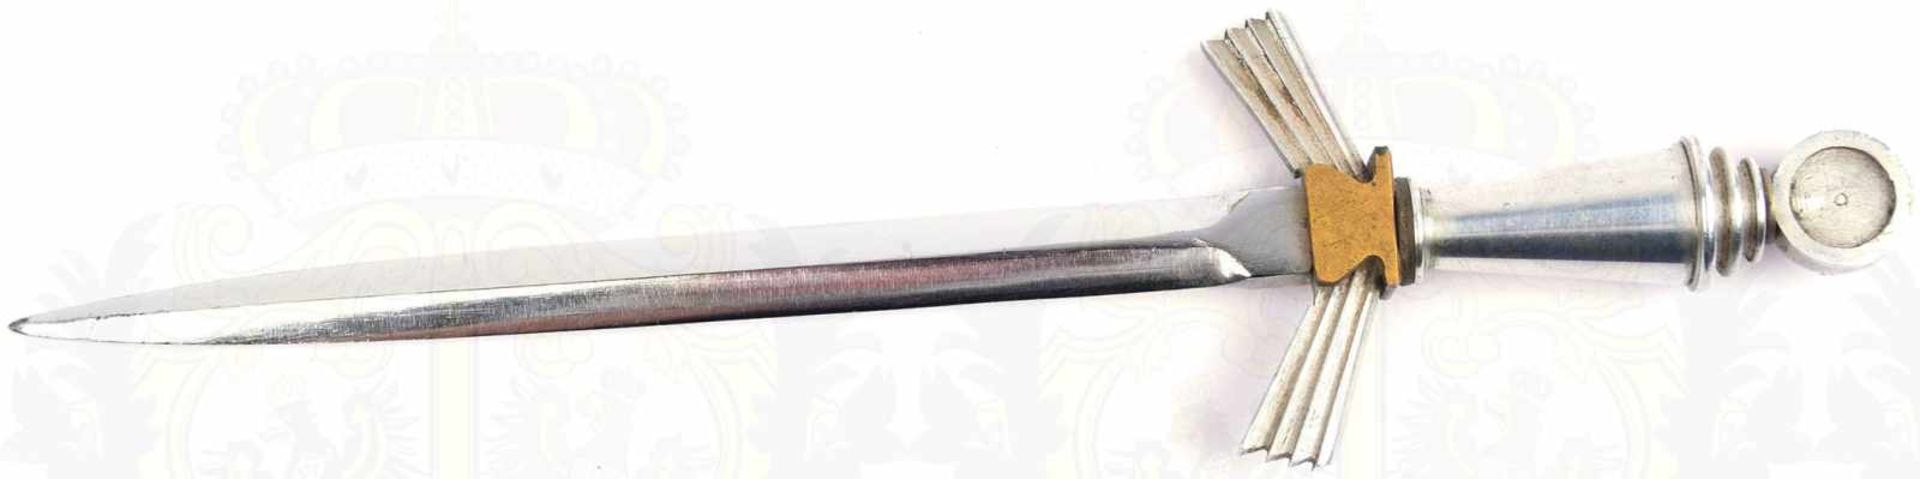 BRIEFÖFFNER, blanke zweischneidige Klinge, L. 14cm, Griffteile Weißmetall/Tombak, vernickelte - Image 2 of 3